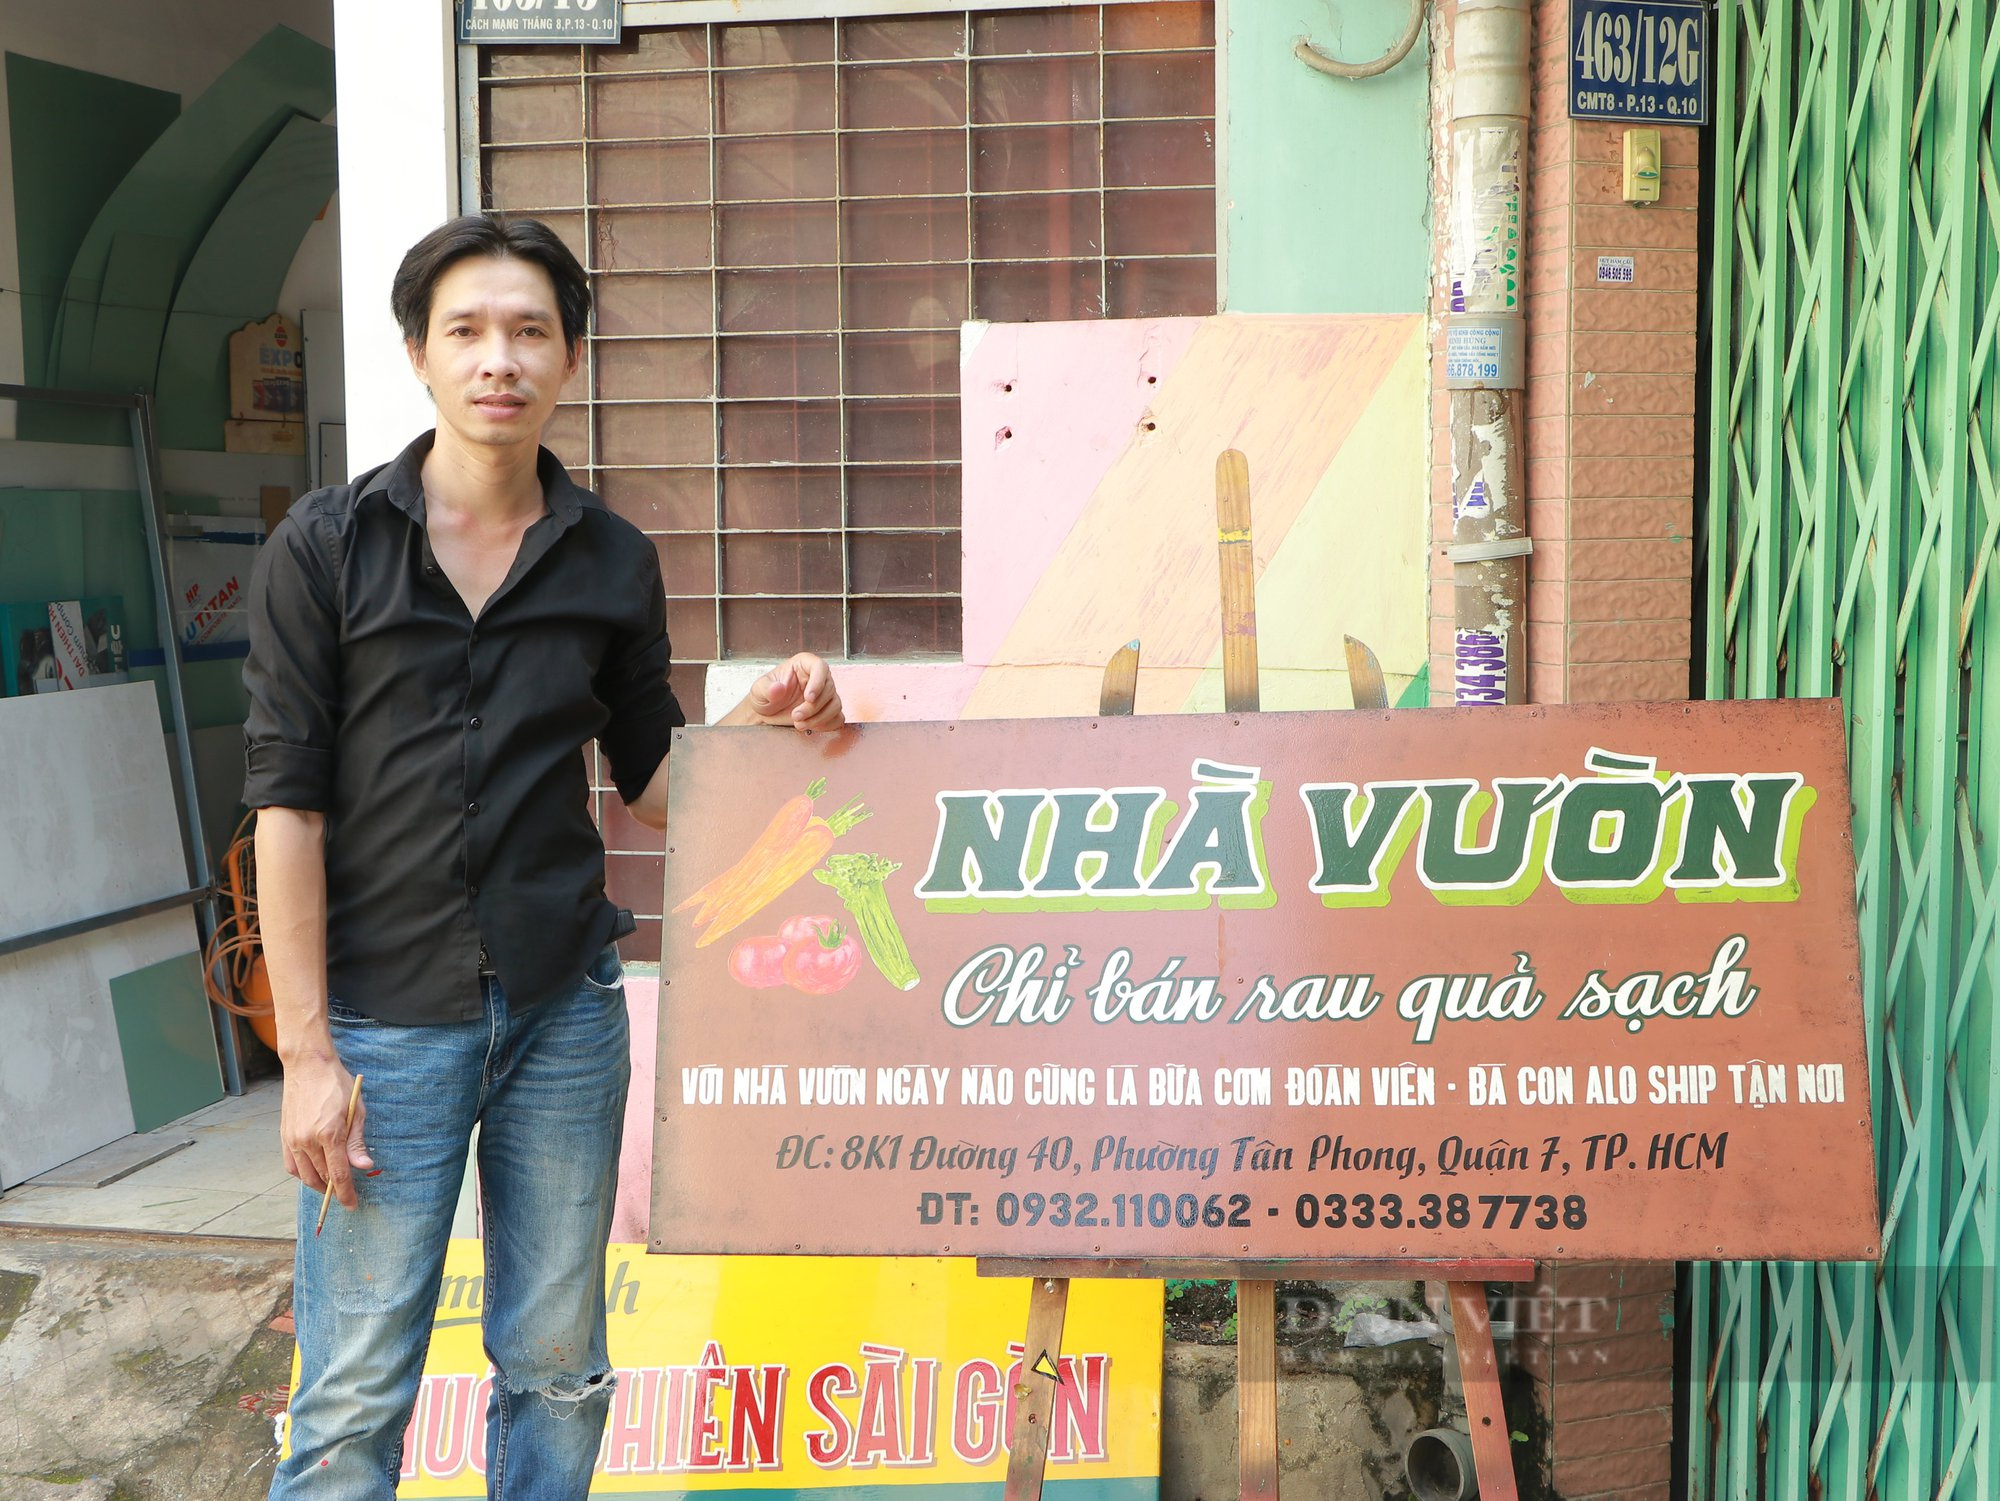 Người độc nhất vẽ bảng hiệu quảng cáo kèm thơ bằng tay ở Sài Gòn